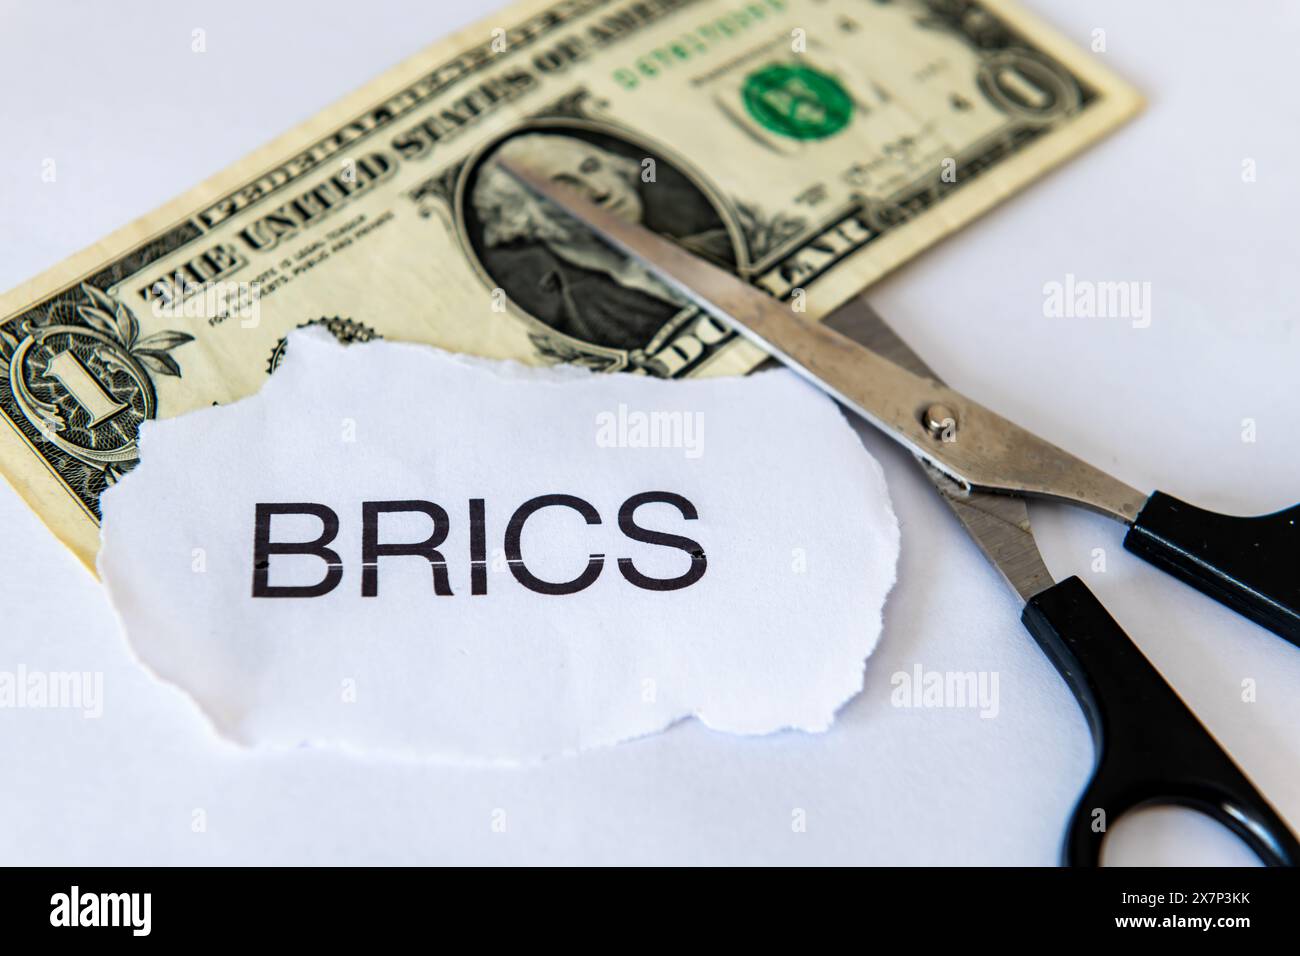 Un concept de dédollarisation avec un billet de banque d'un dollar, le mot BRICS et une paire de ciseaux isolés en blanc. Banque D'Images